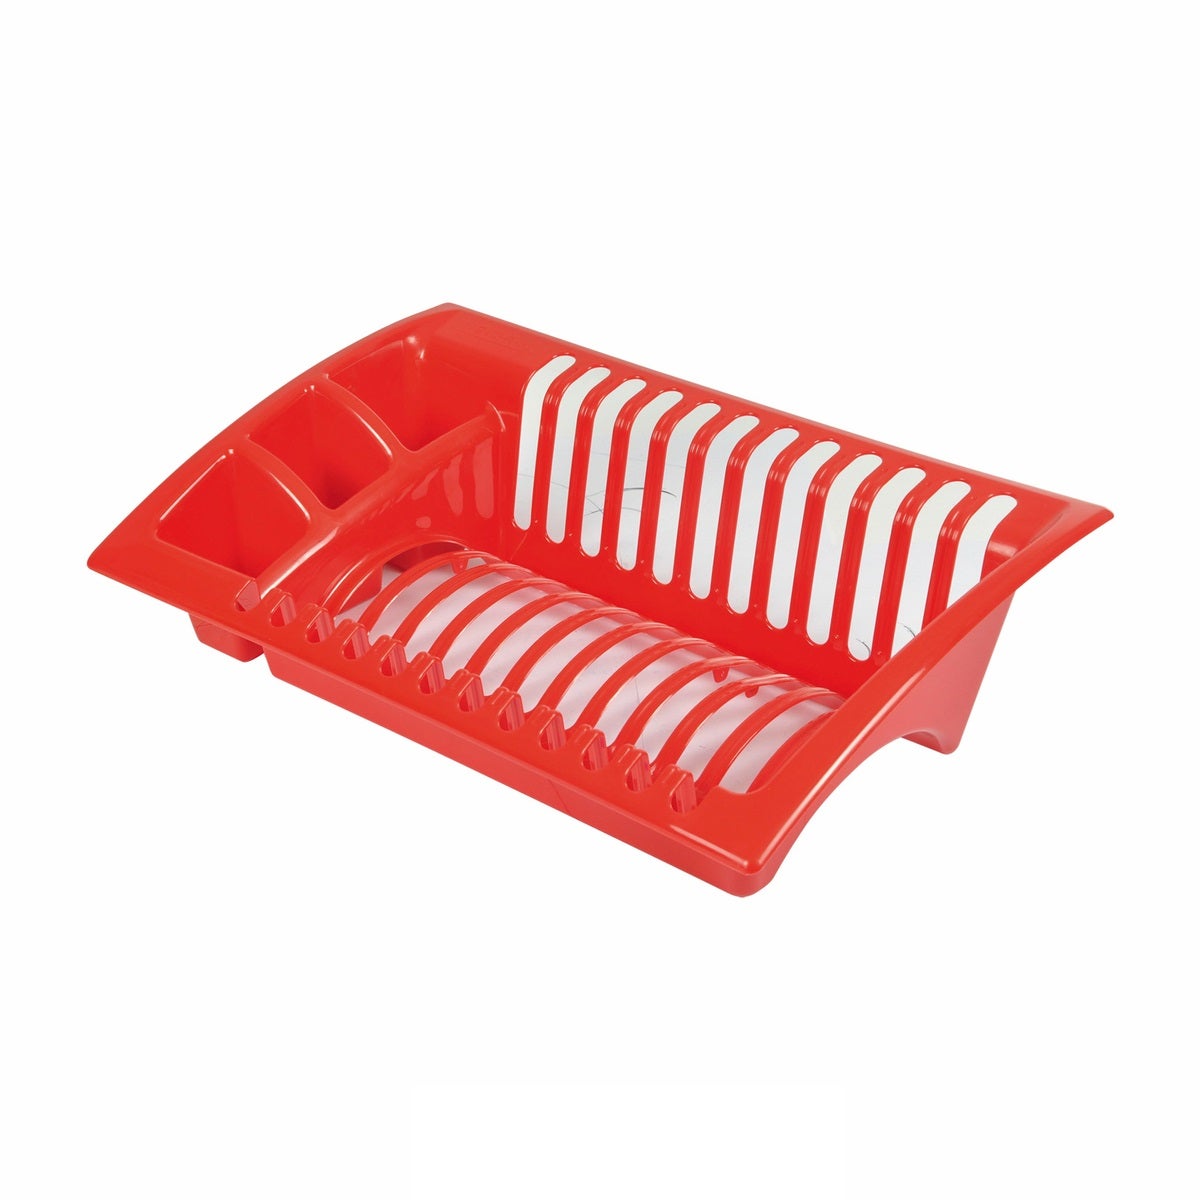 Egouttoir a vaisselle rouge 48 x 38 x 9 cm avec bac en plastique pas cher 